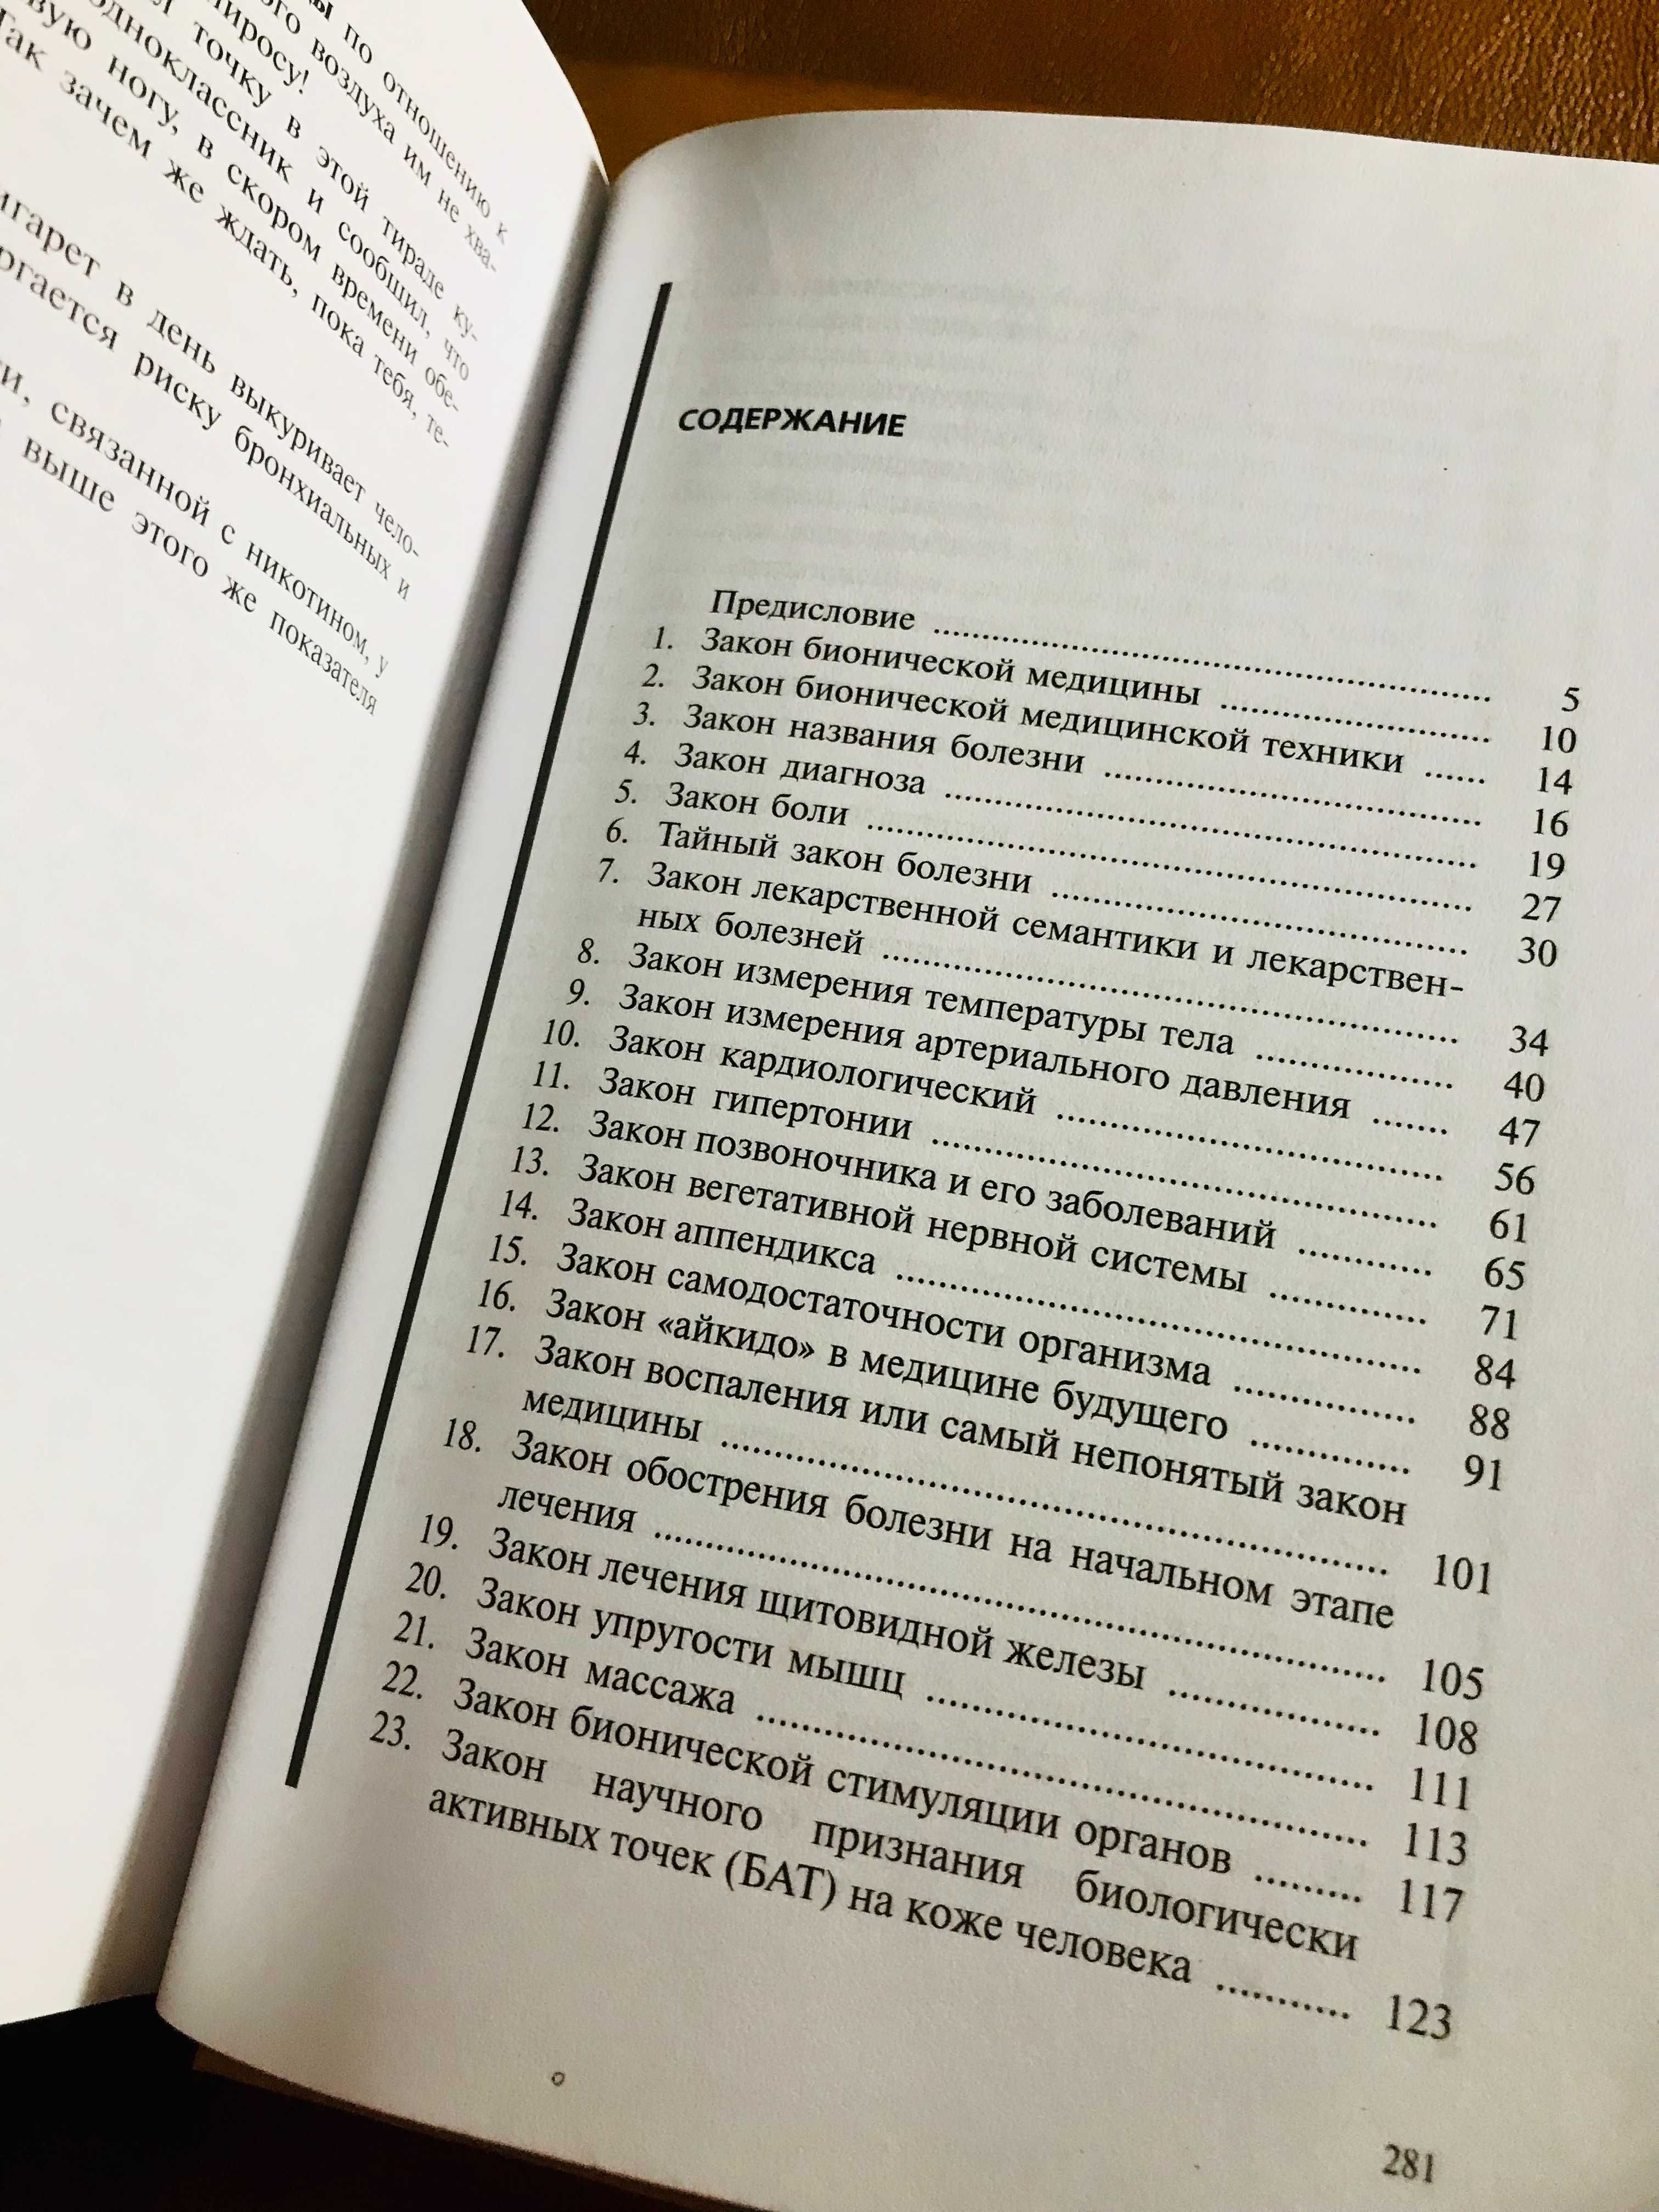 | 60 законов медицины века | Миргородский В.Н. |